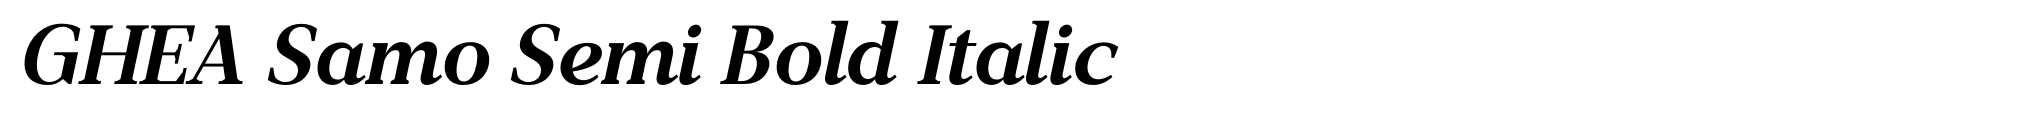 GHEA Samo Semi Bold Italic image